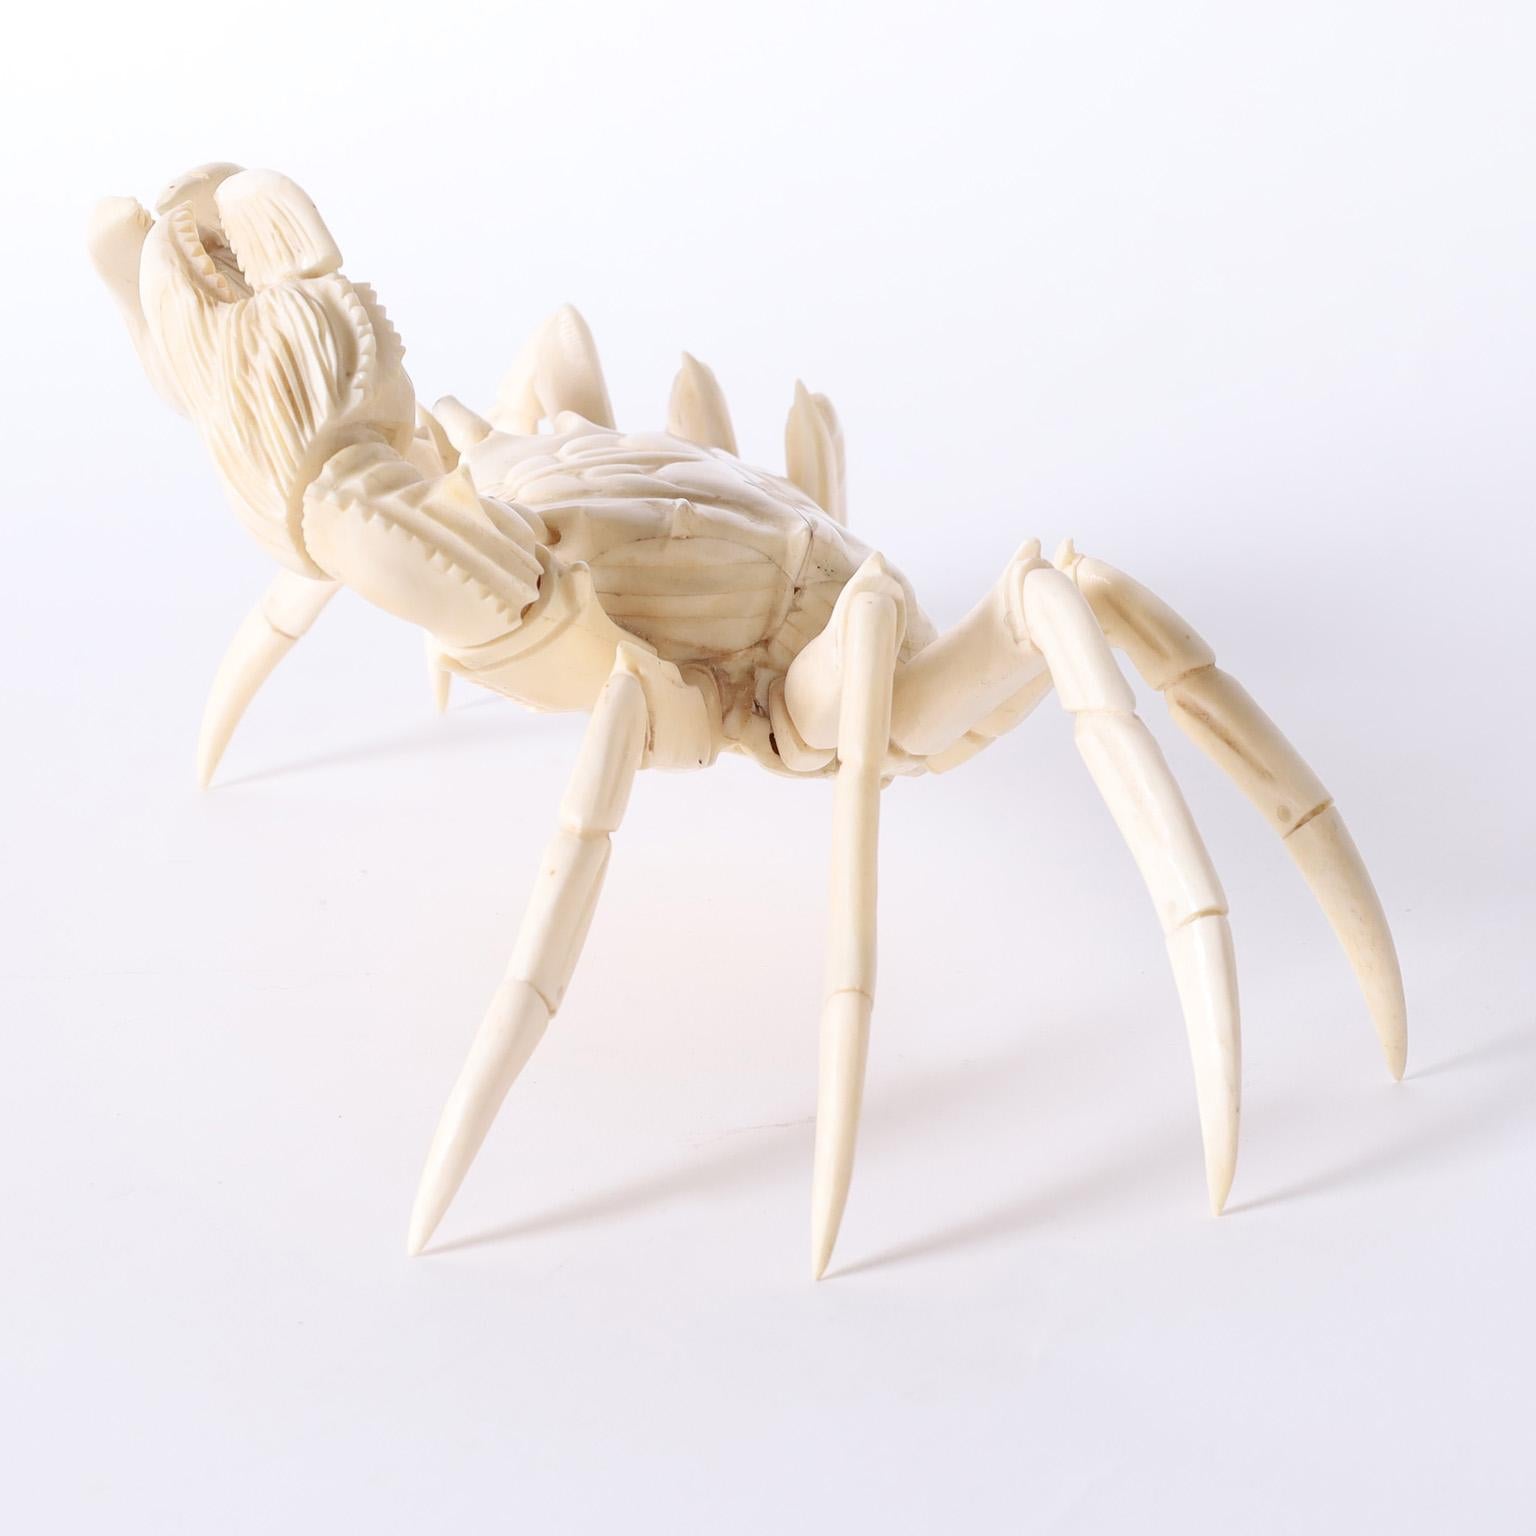 skeleton of a crab